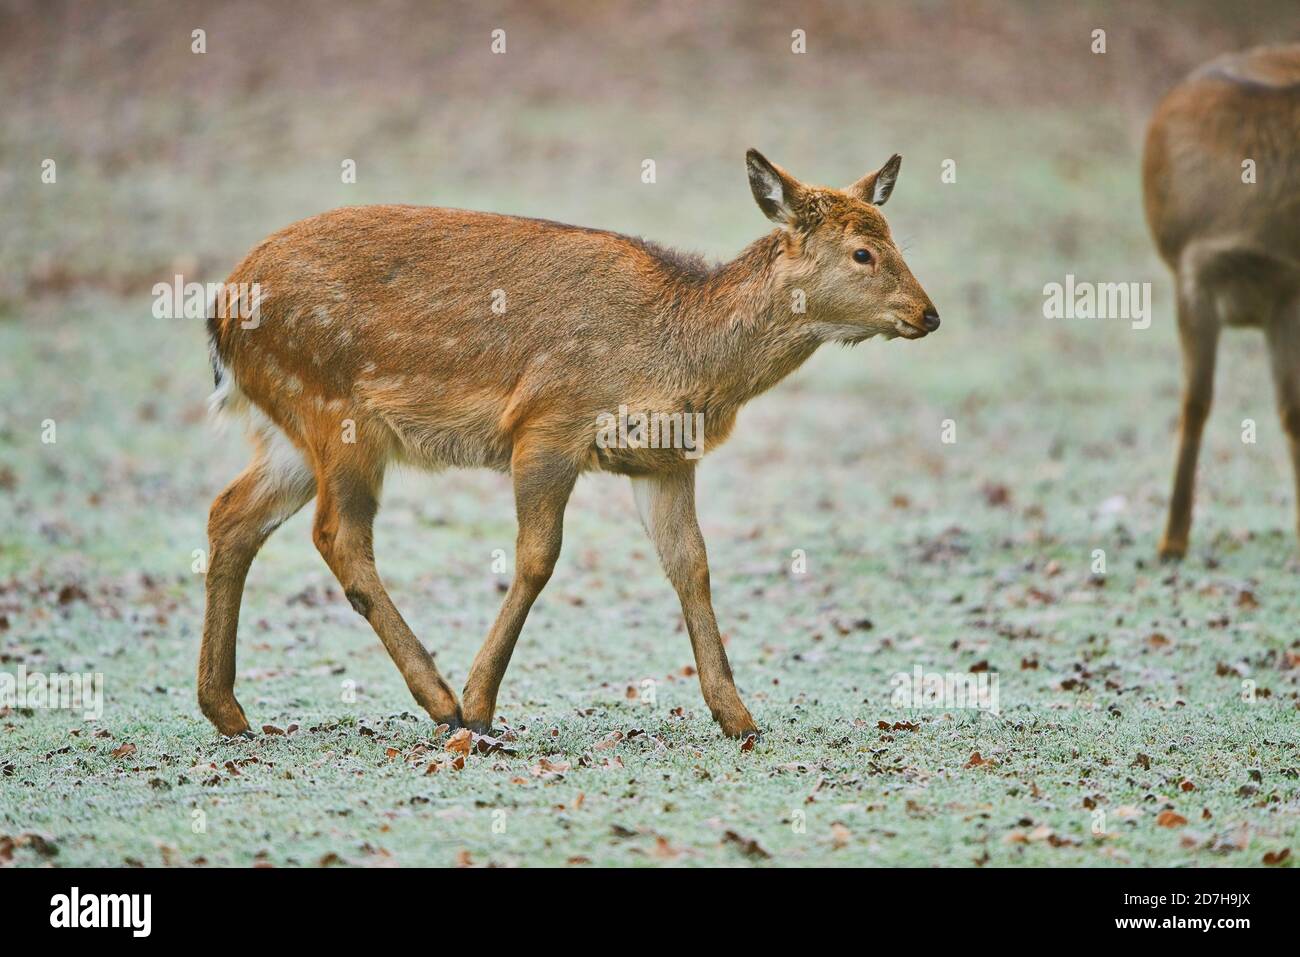 Sika deer, Tame sika deer, Tame deer (Cervus nippon), juvenile Tame deer walking on frozen ground, side view, Germany Stock Photo